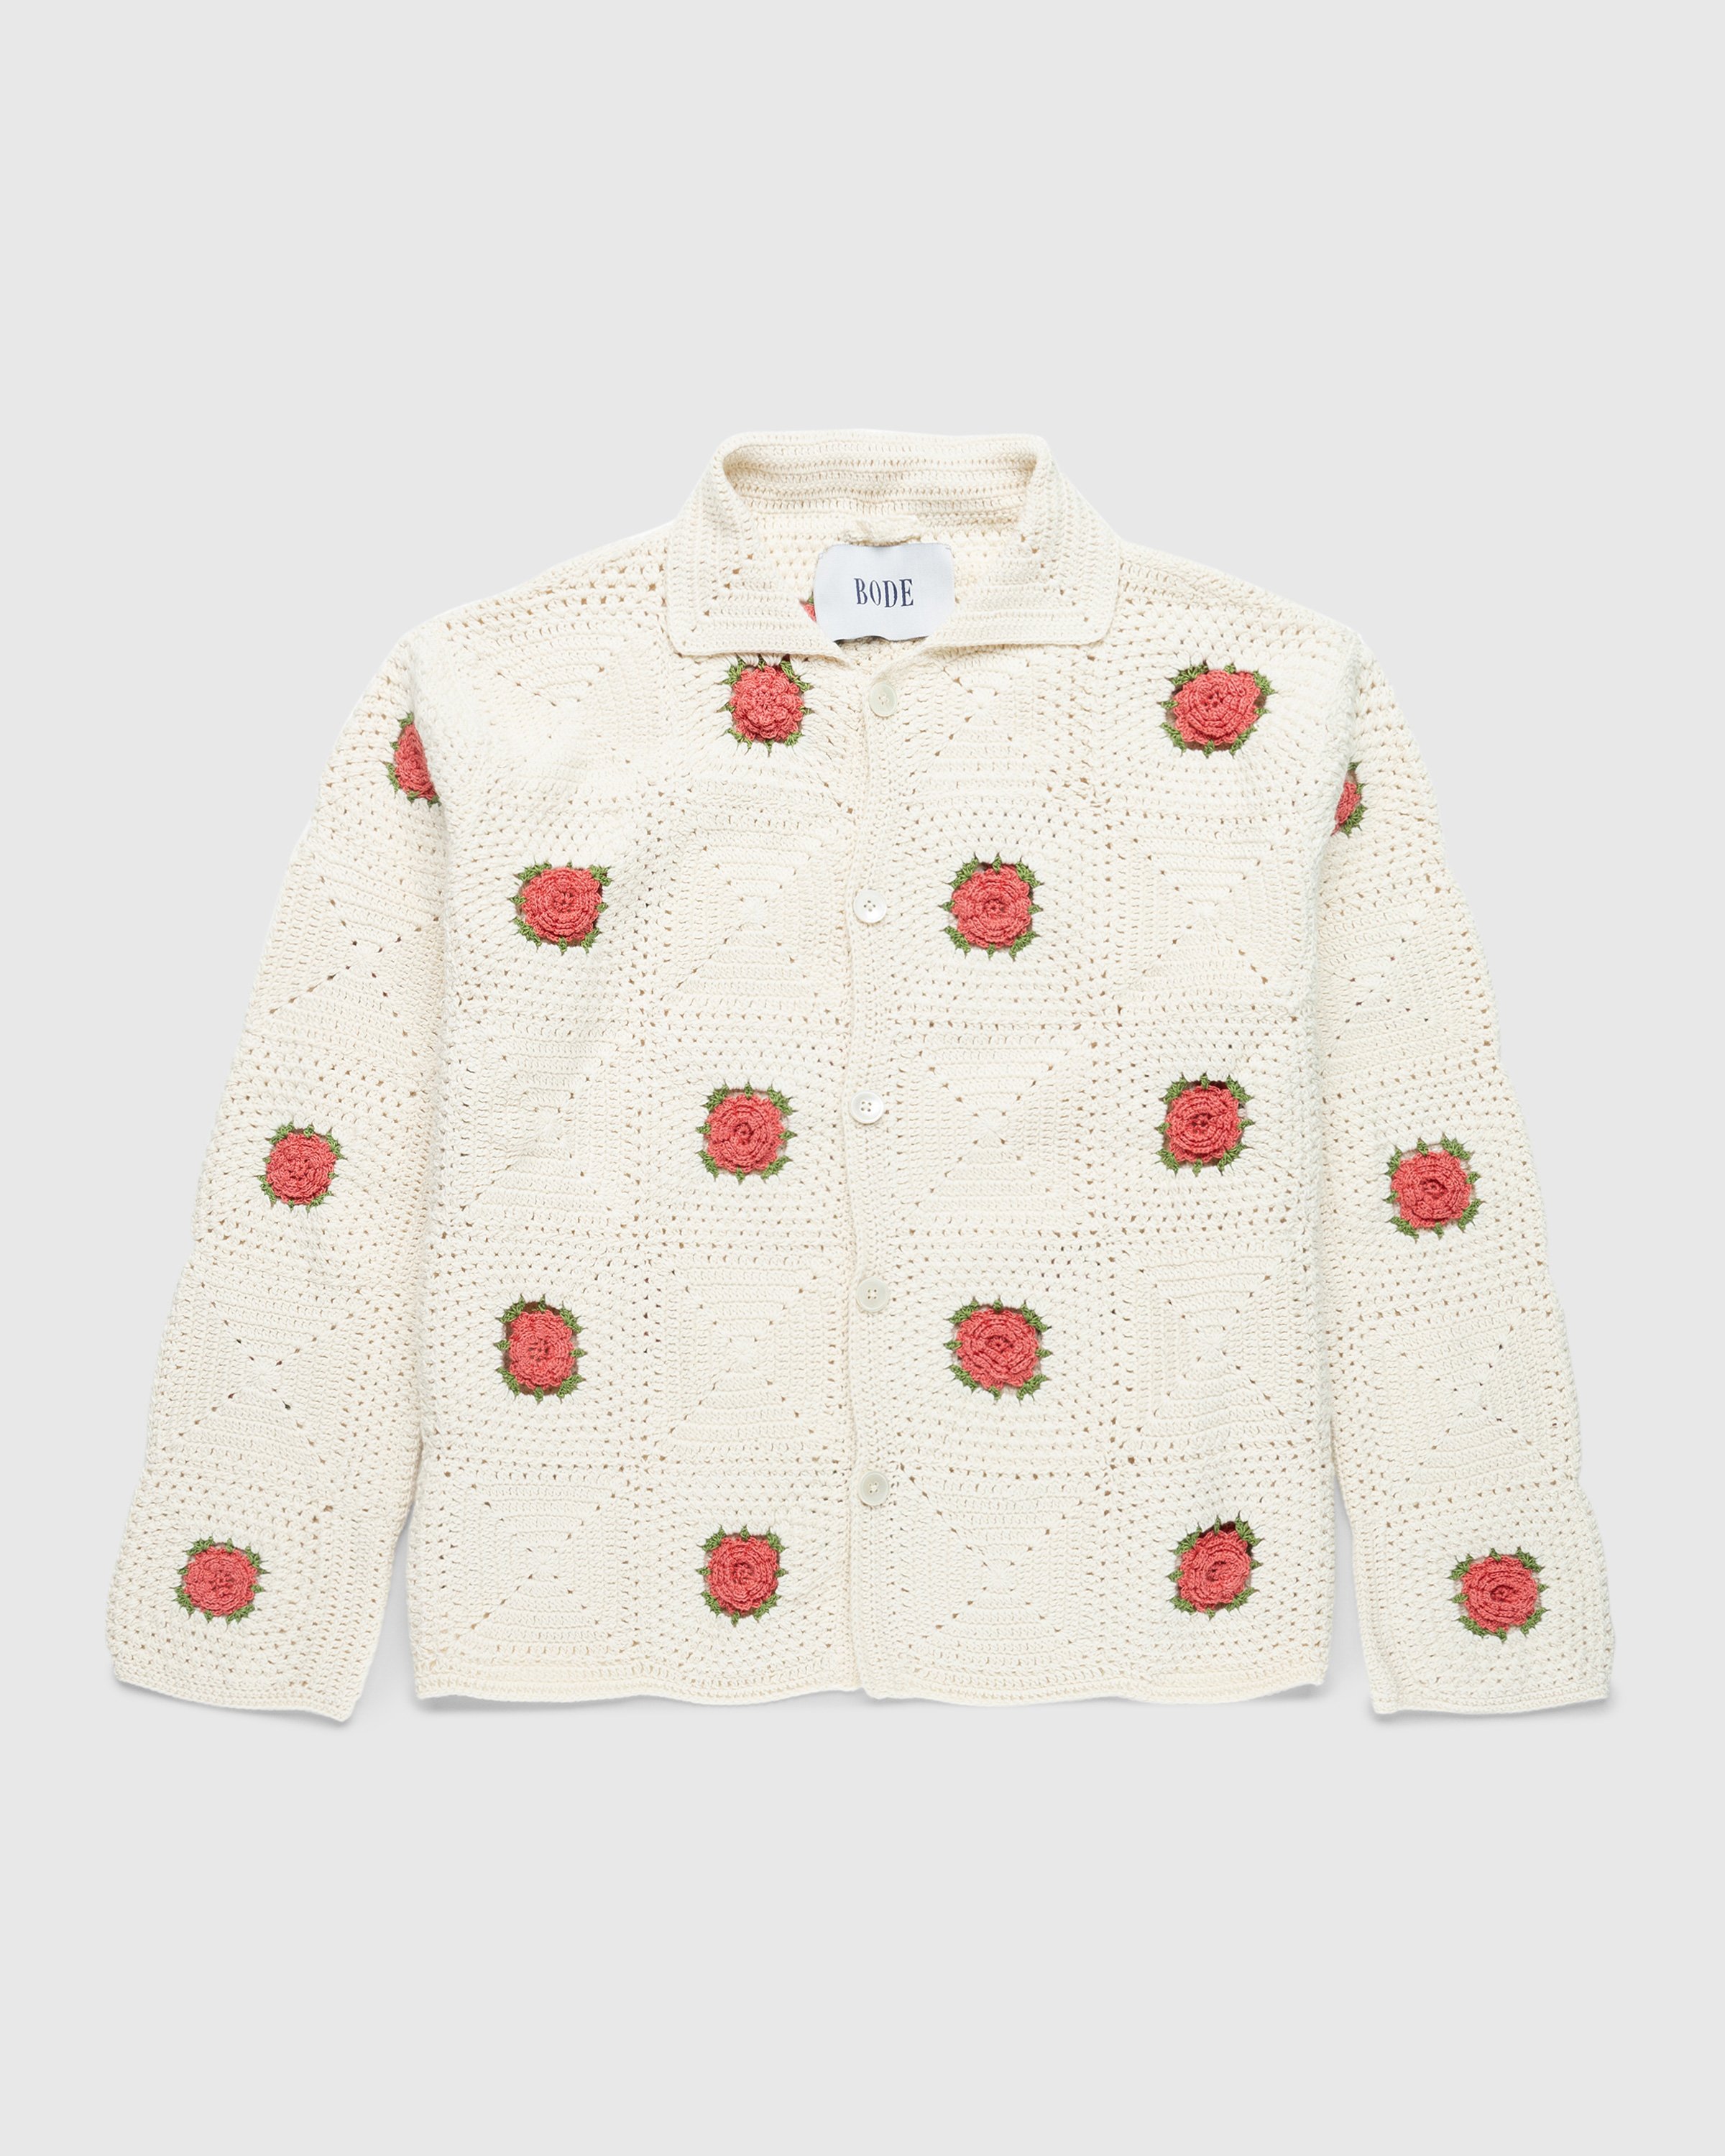 Bode - Rosette Crochet Shirt Longsleeve - Clothing - Multi - Image 1